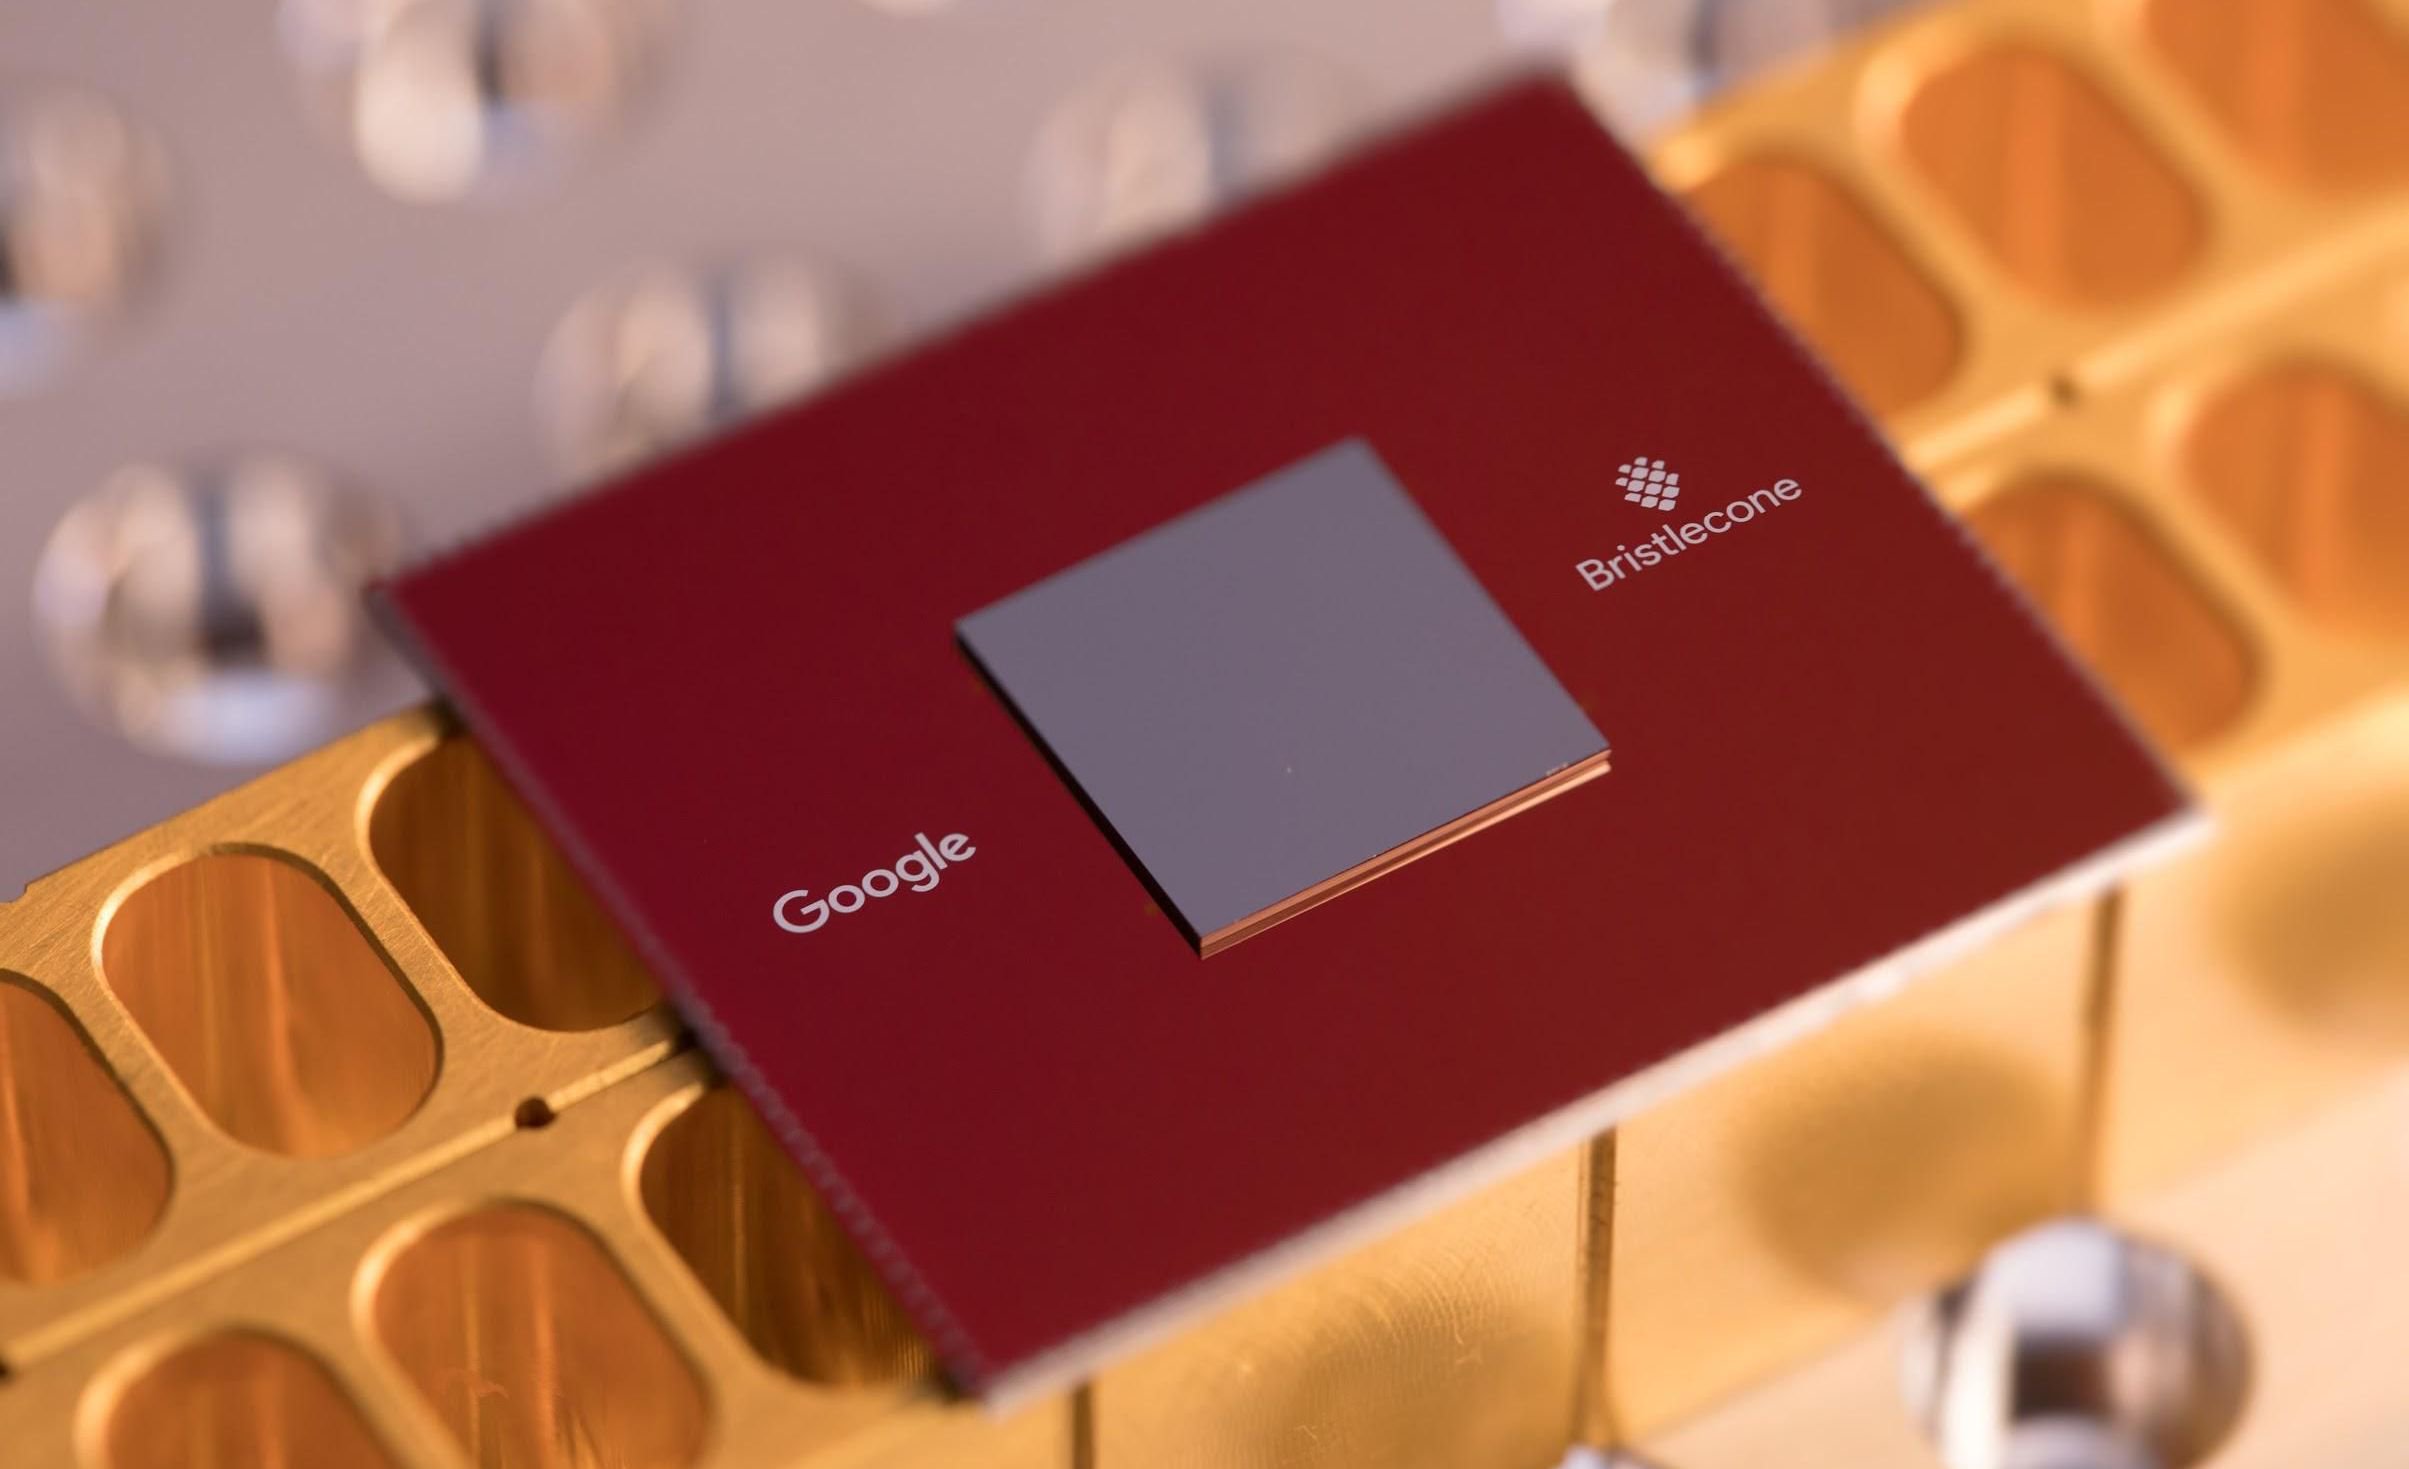 गूगल का अनावरण किया अपने नए क्वांटम प्रोसेसर Bristlecone